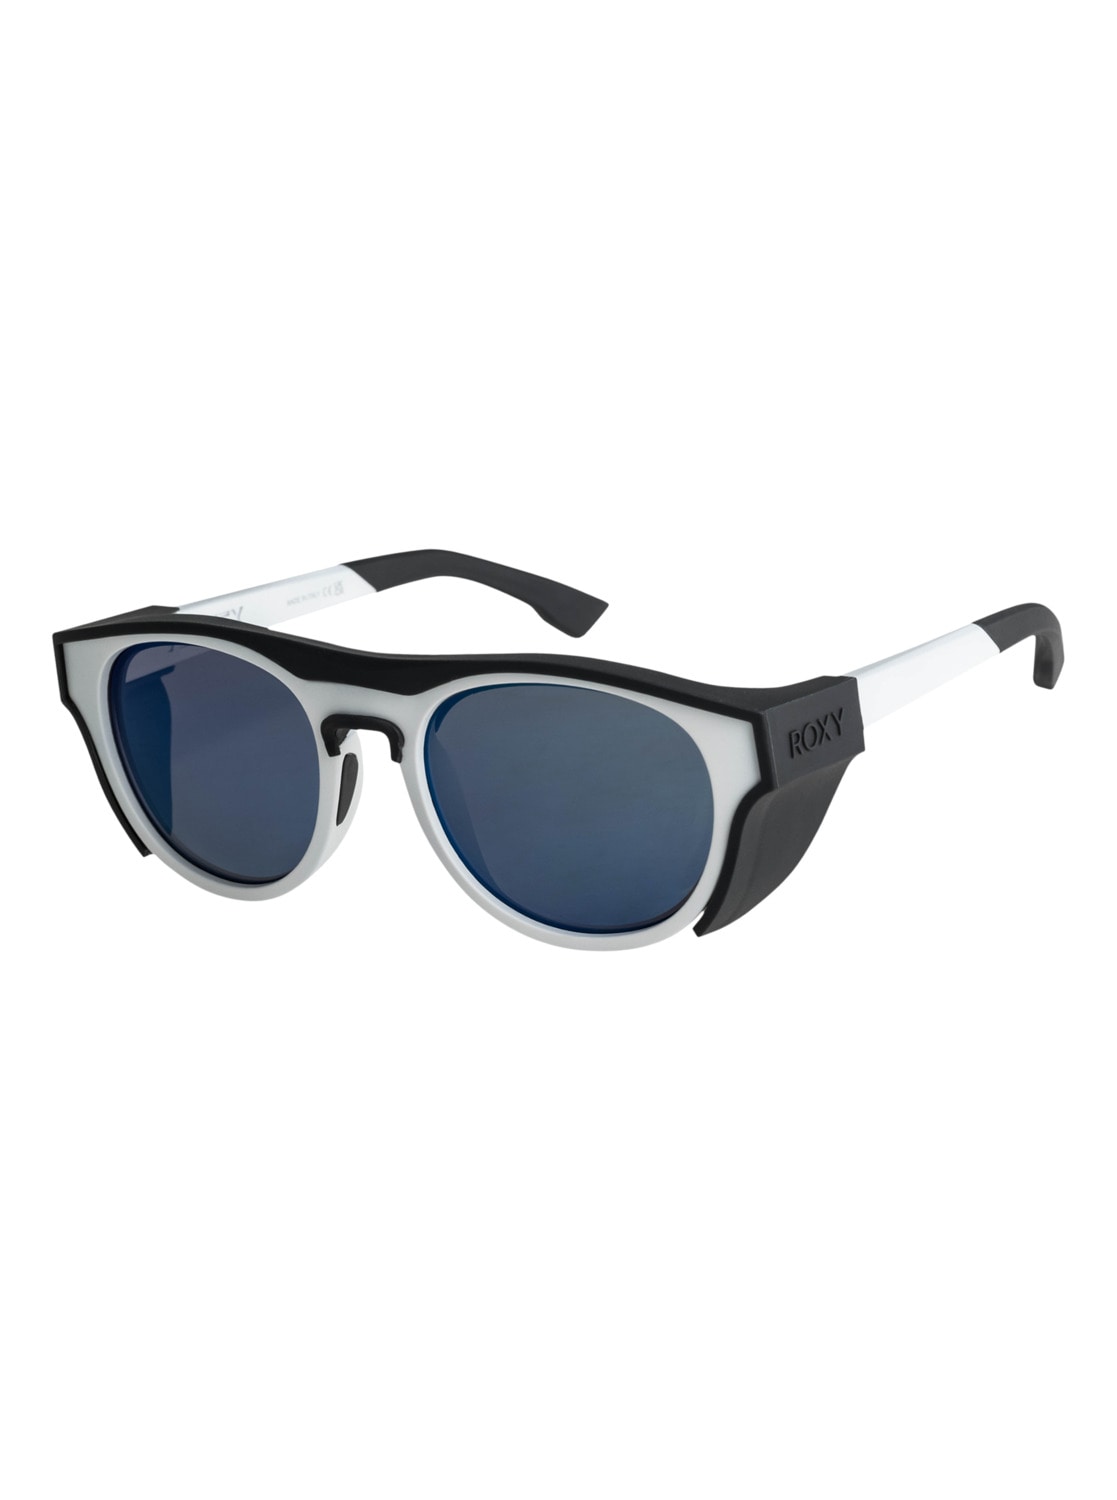 Sonnenbrillen Damen SALE & | BAUR Angebote ▷ günstige Outlet